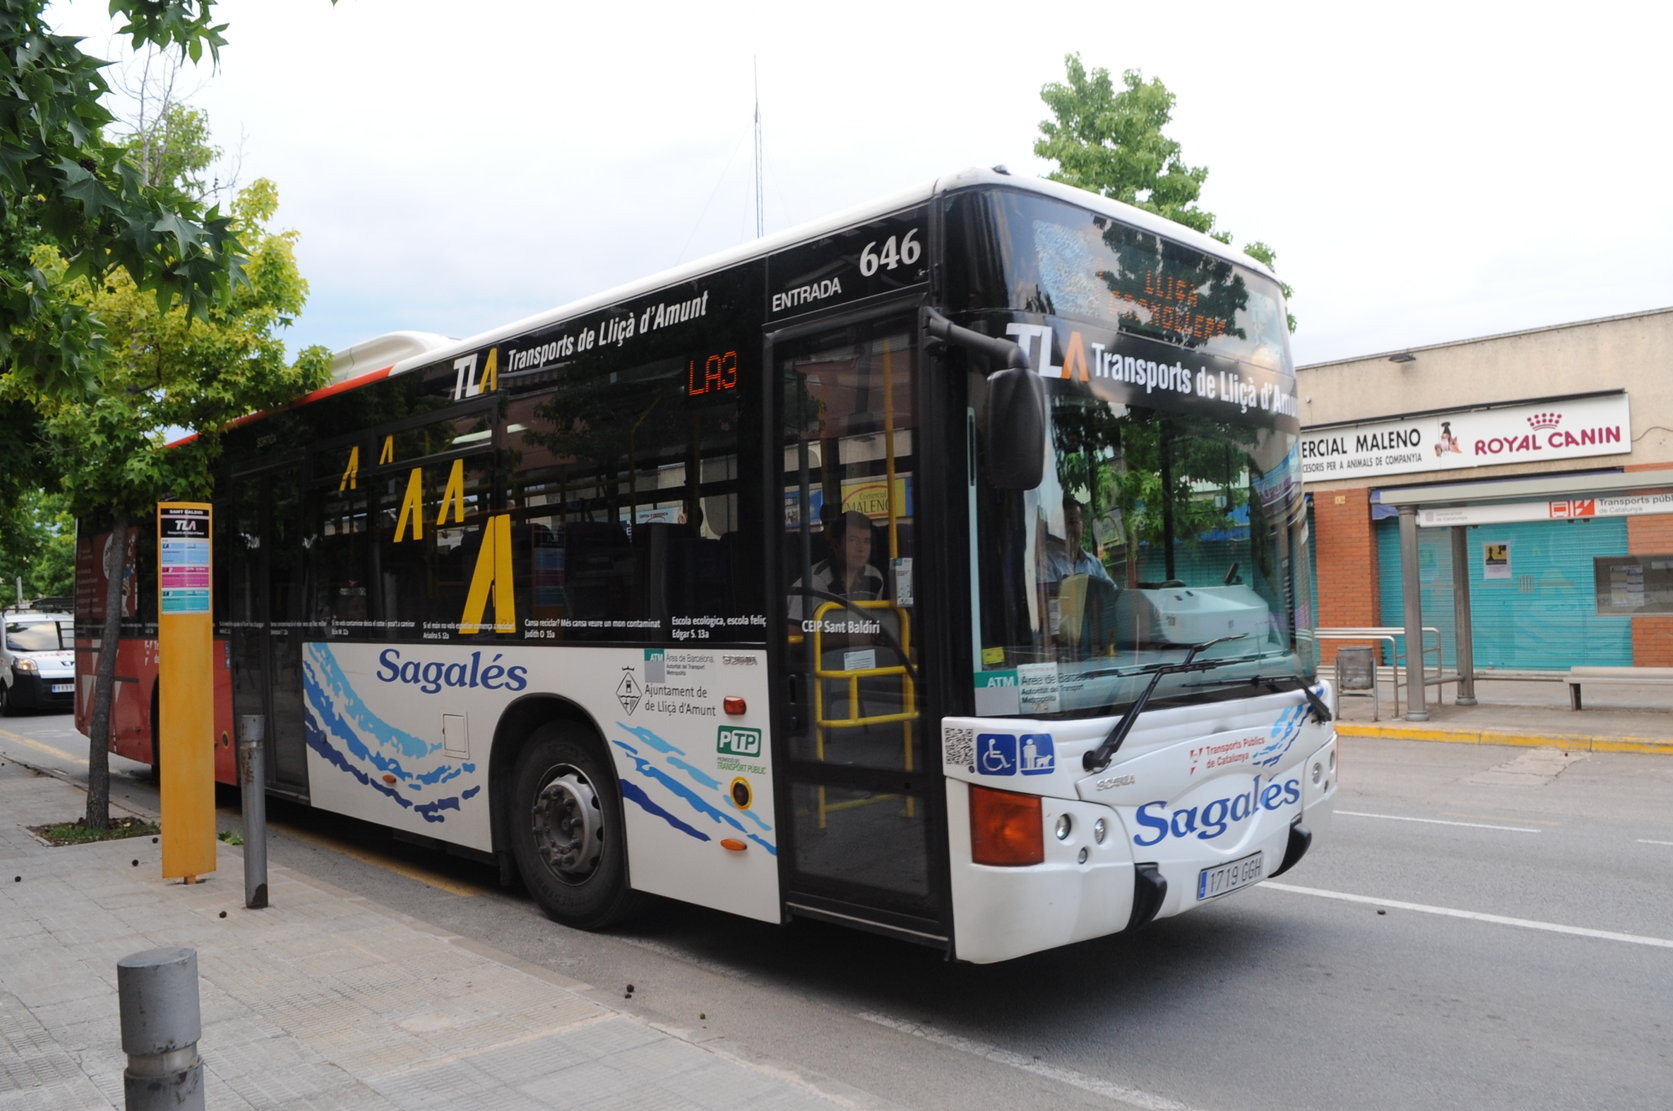 Un dels autobusos del servei urbà de Lliçà d'Amunt en una imatge d'arxiu